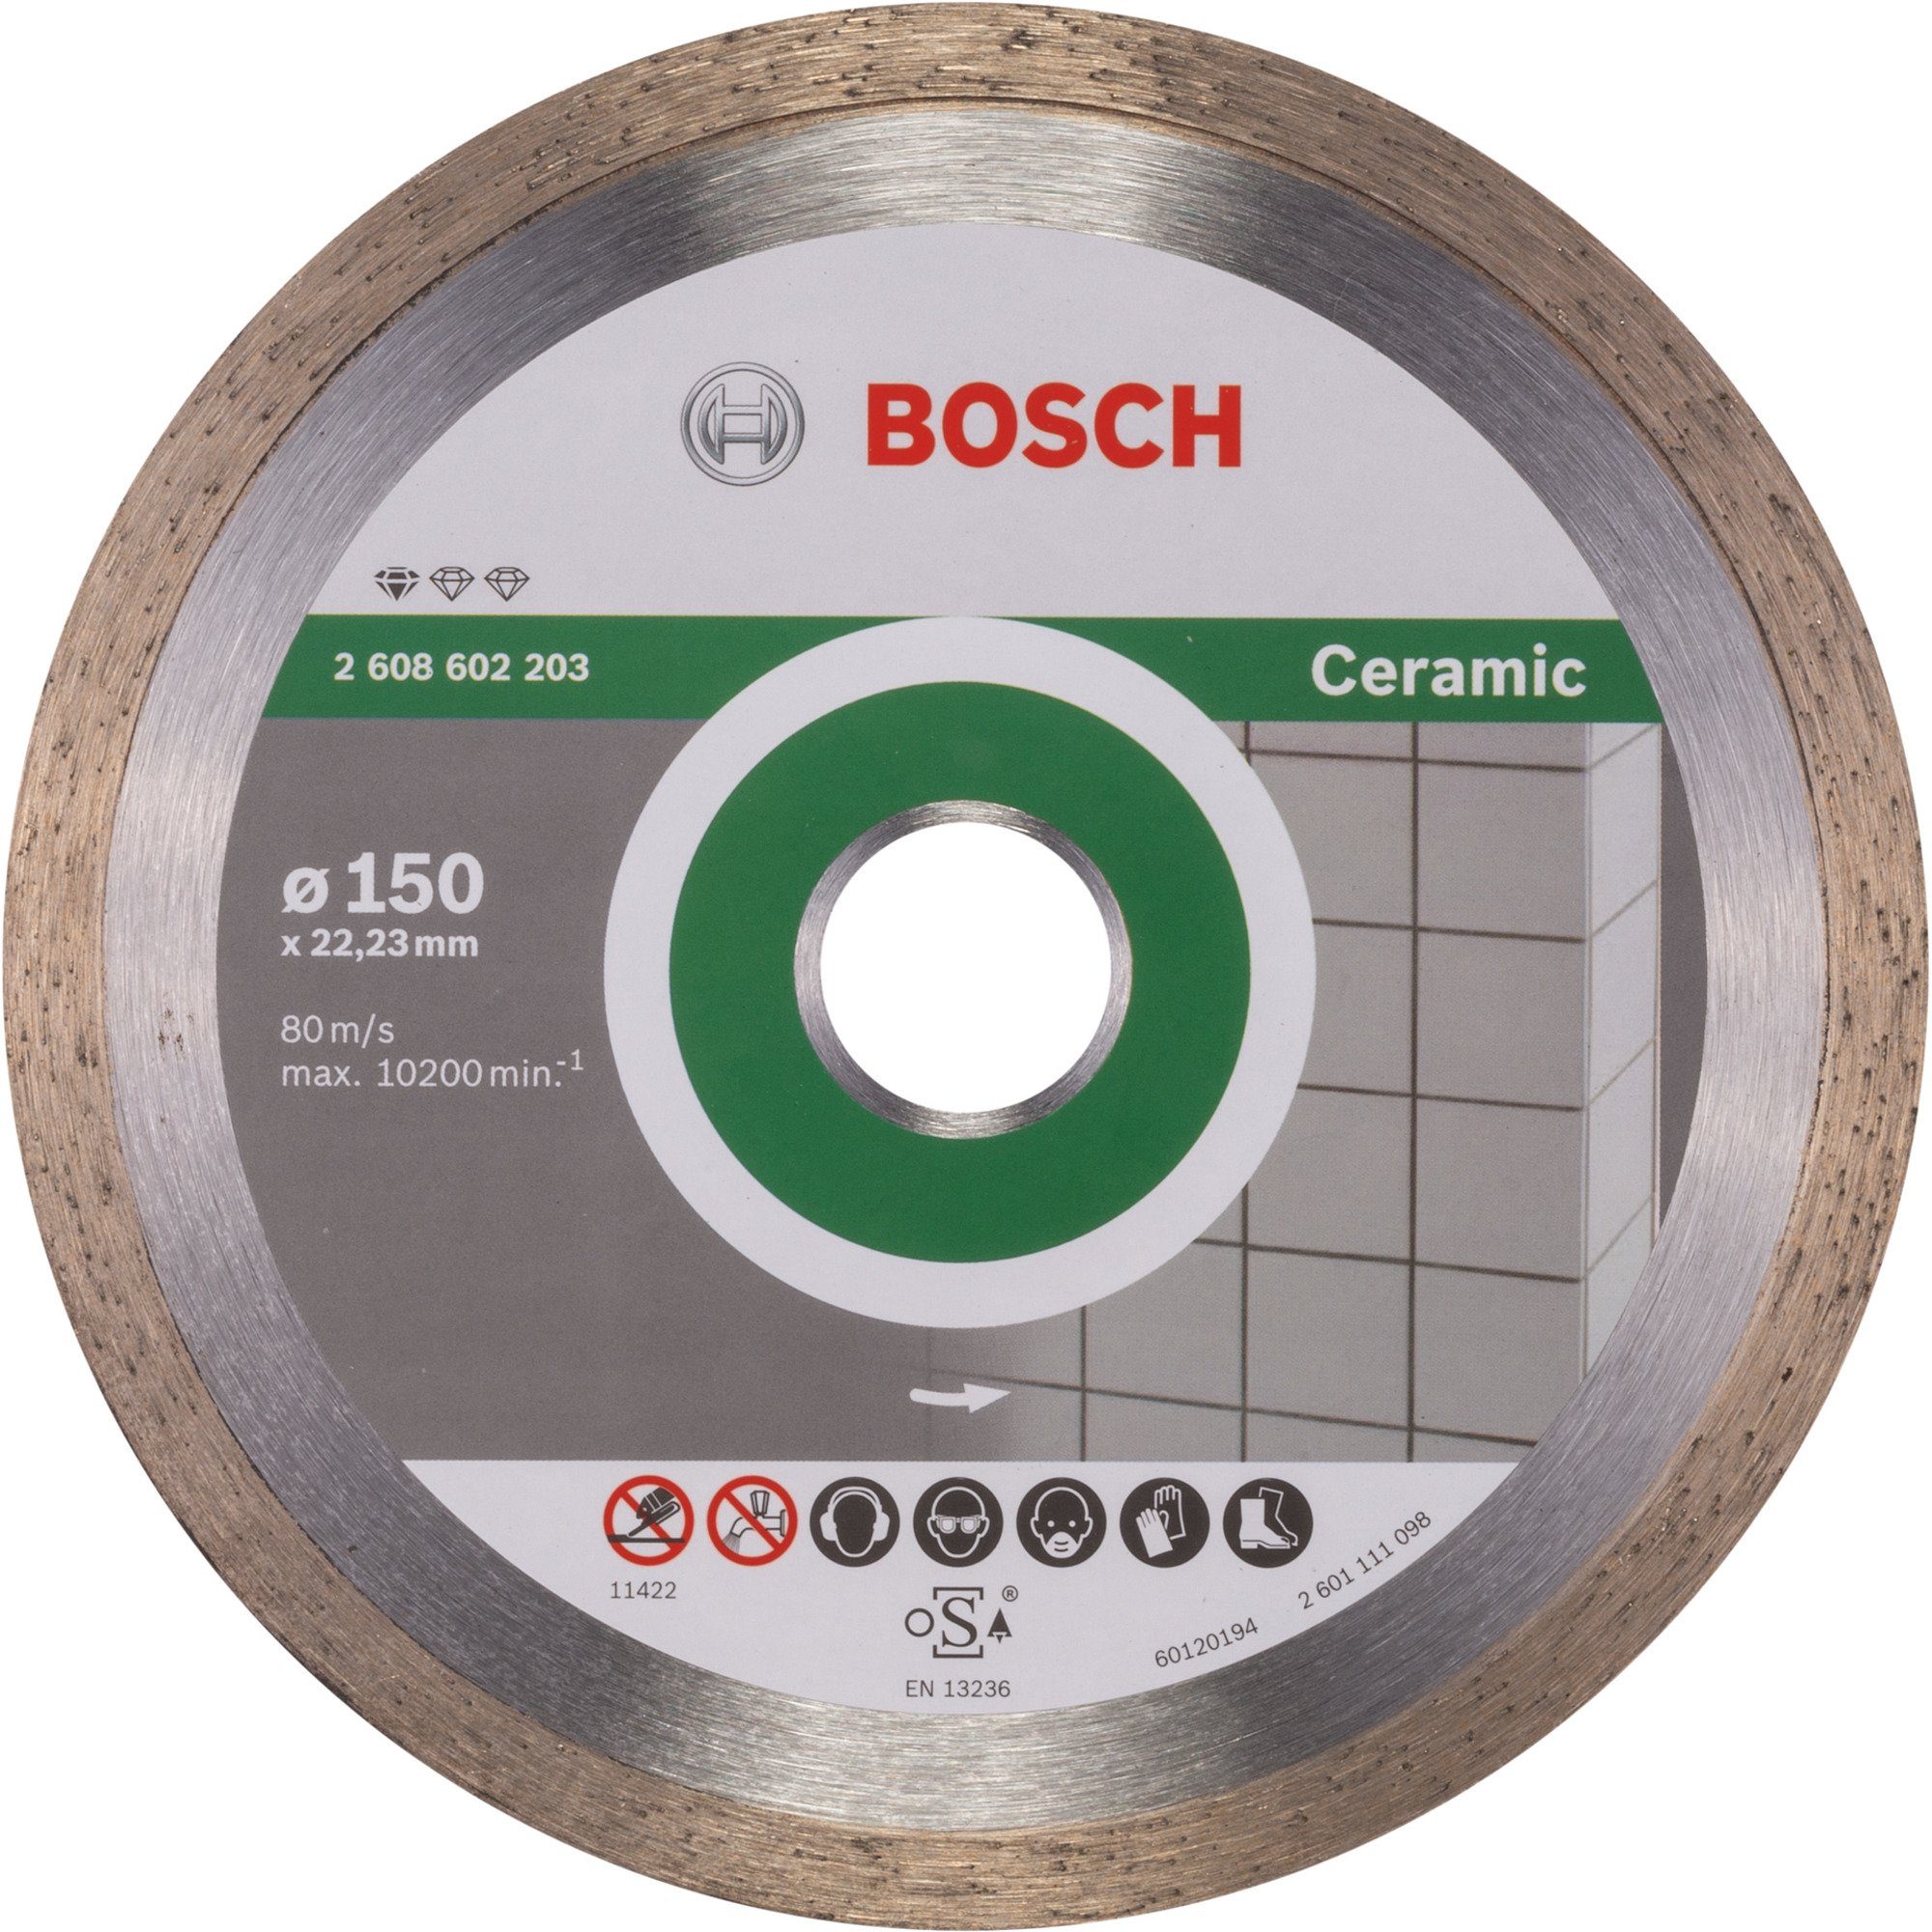 BOSCH Diamanttrennscheibe Bosch Professional Trennscheibe Standard